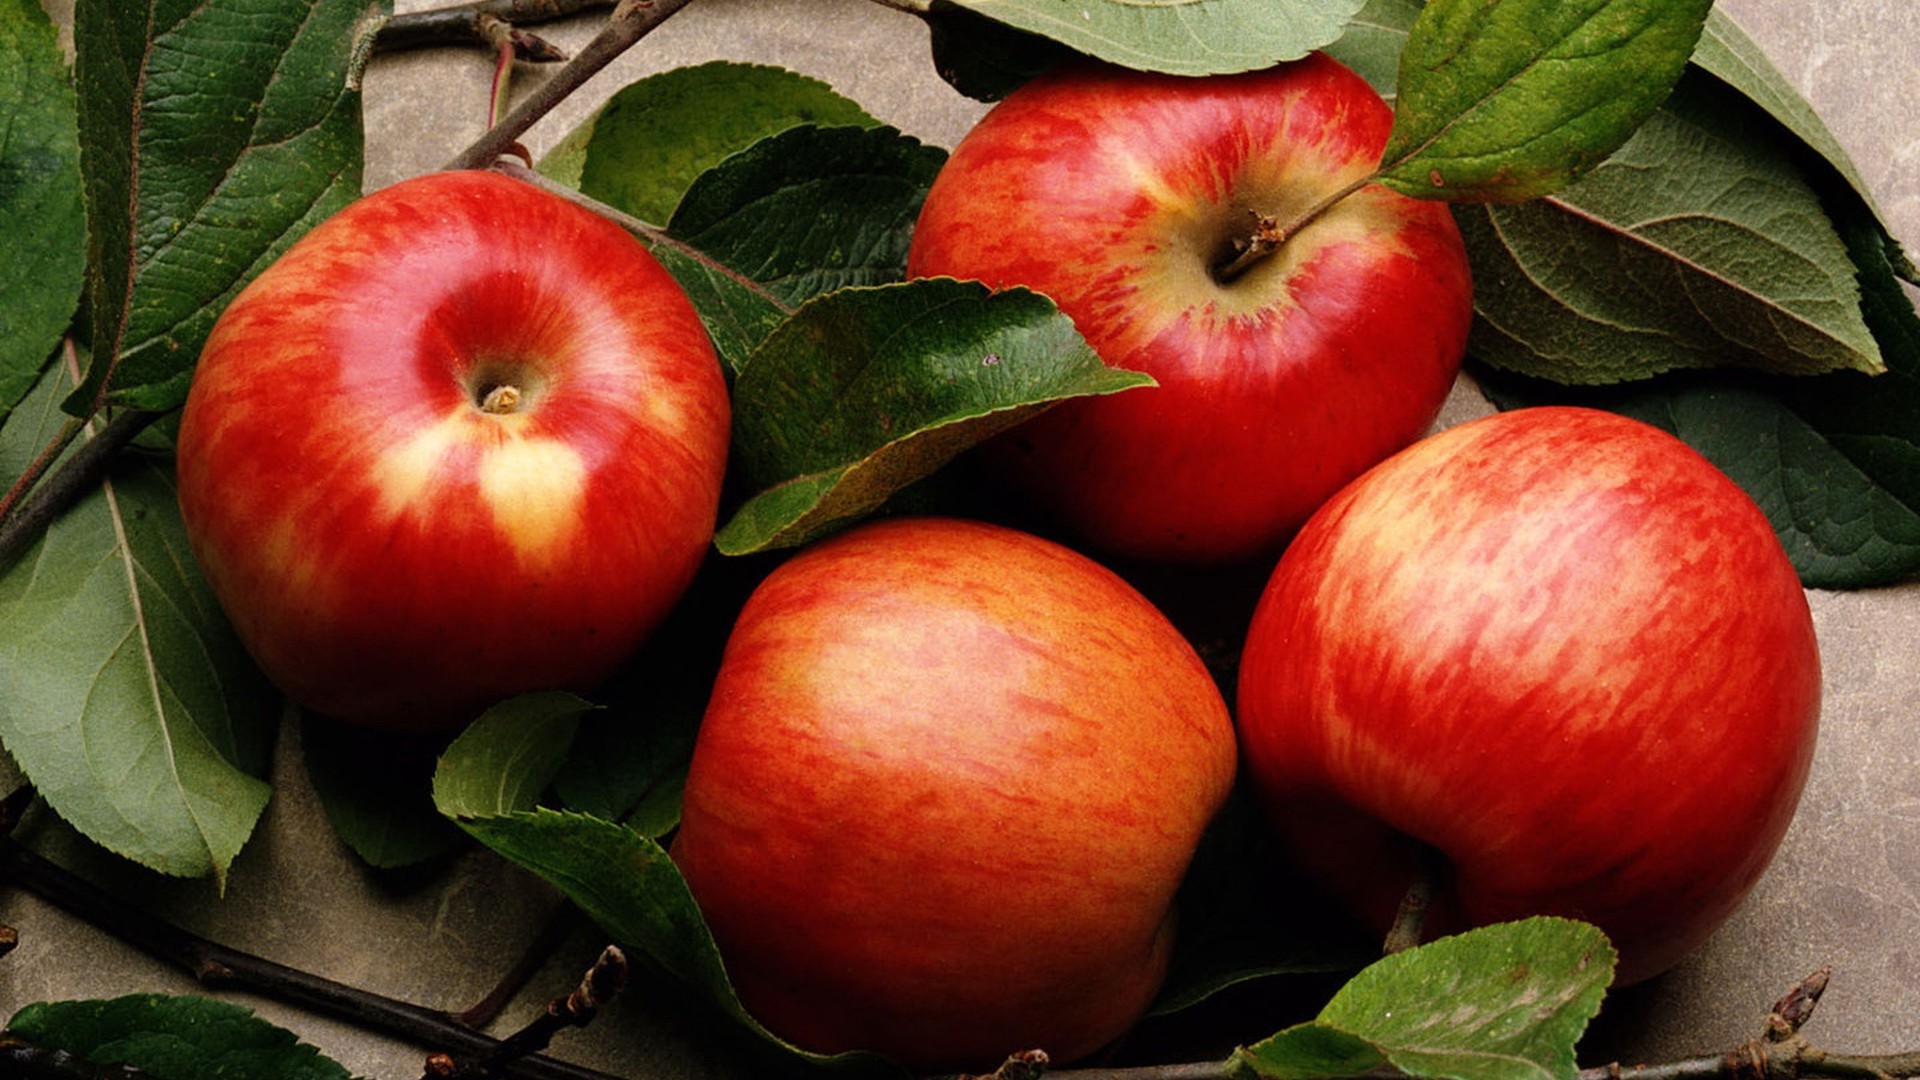 фрукты яблоко лист еда сочные осень здоровый природа пастбище кондитерское изделие здоровья питание вкусные сельское хозяйство свежесть сад диета